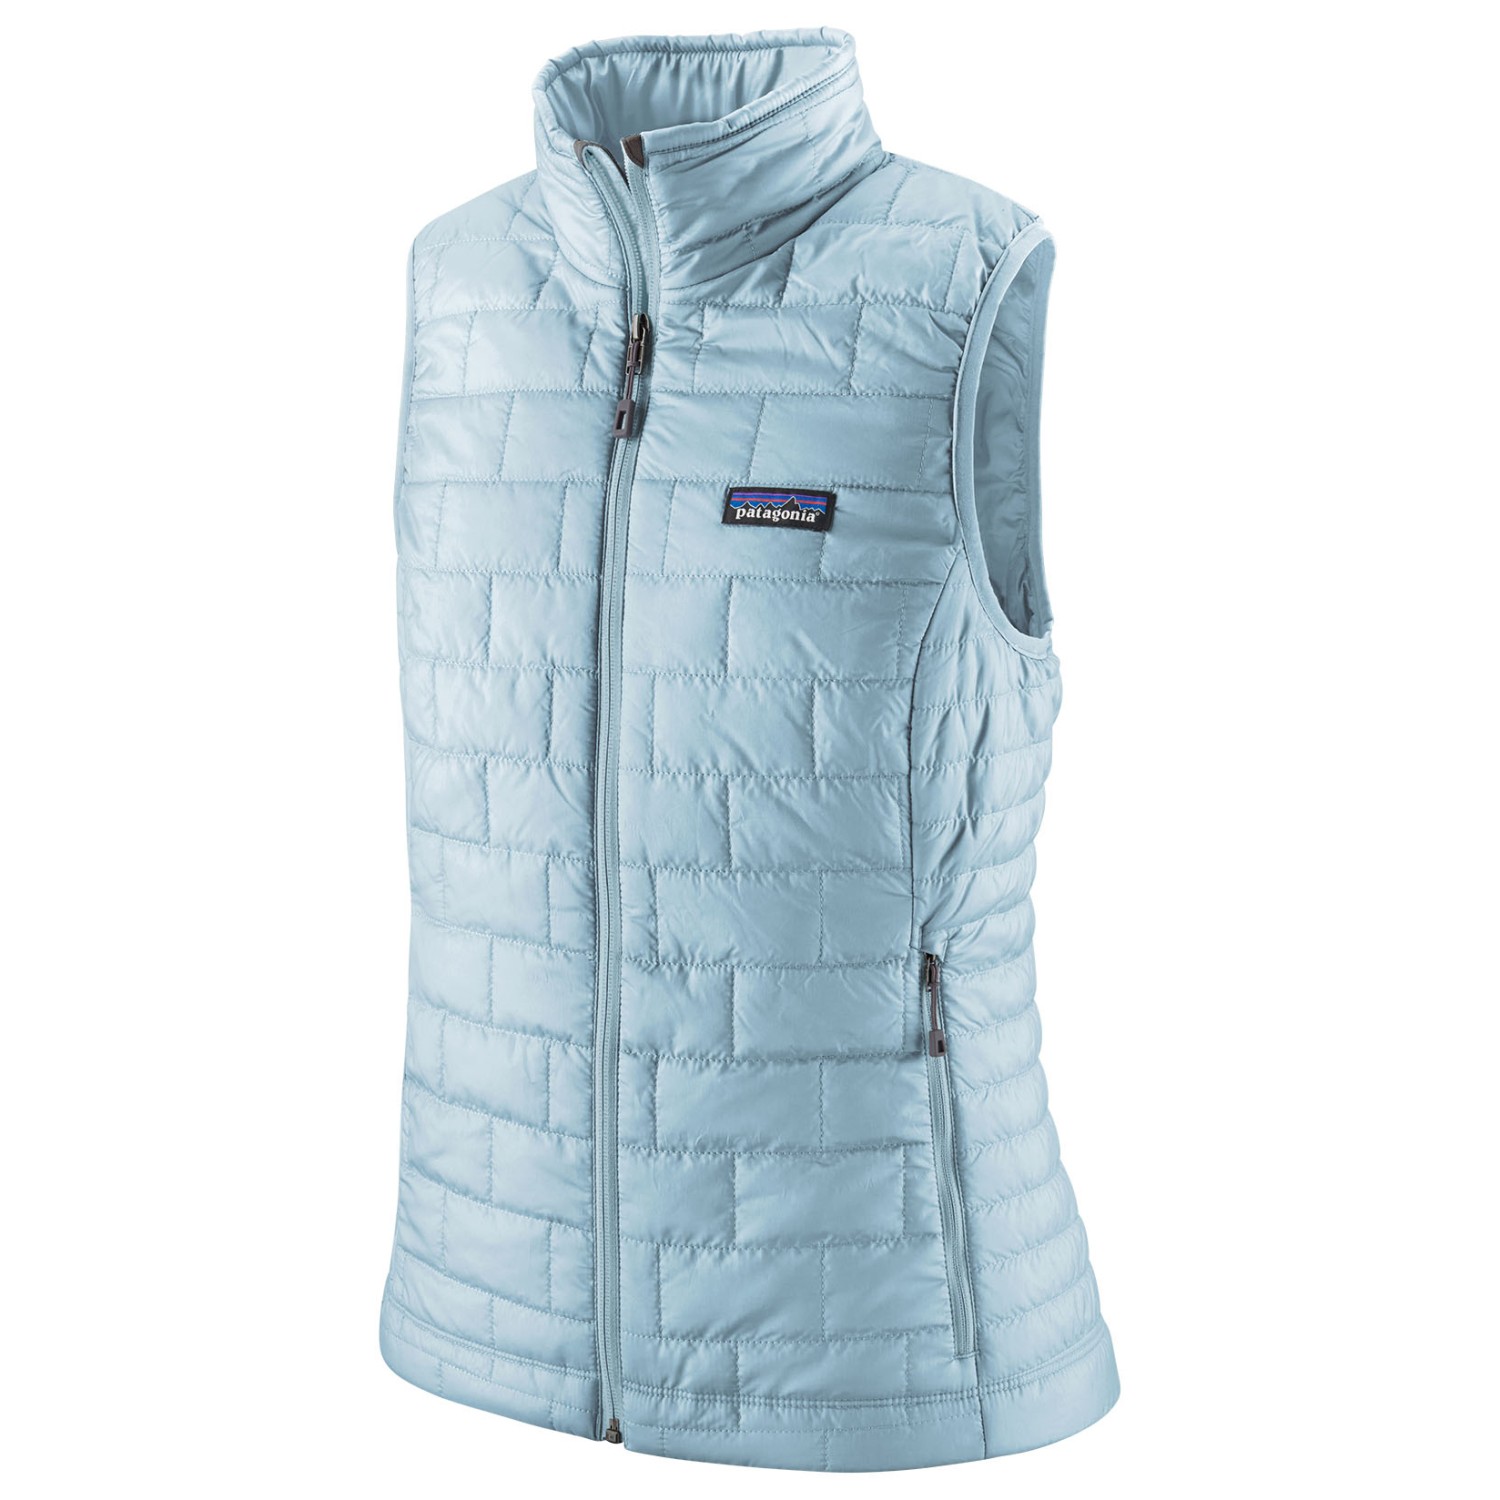 Жилет из синтетического волокна Patagonia Women's Nano Puff Vest, цвет Chilled Blue жилет siksilk cropped vest черный